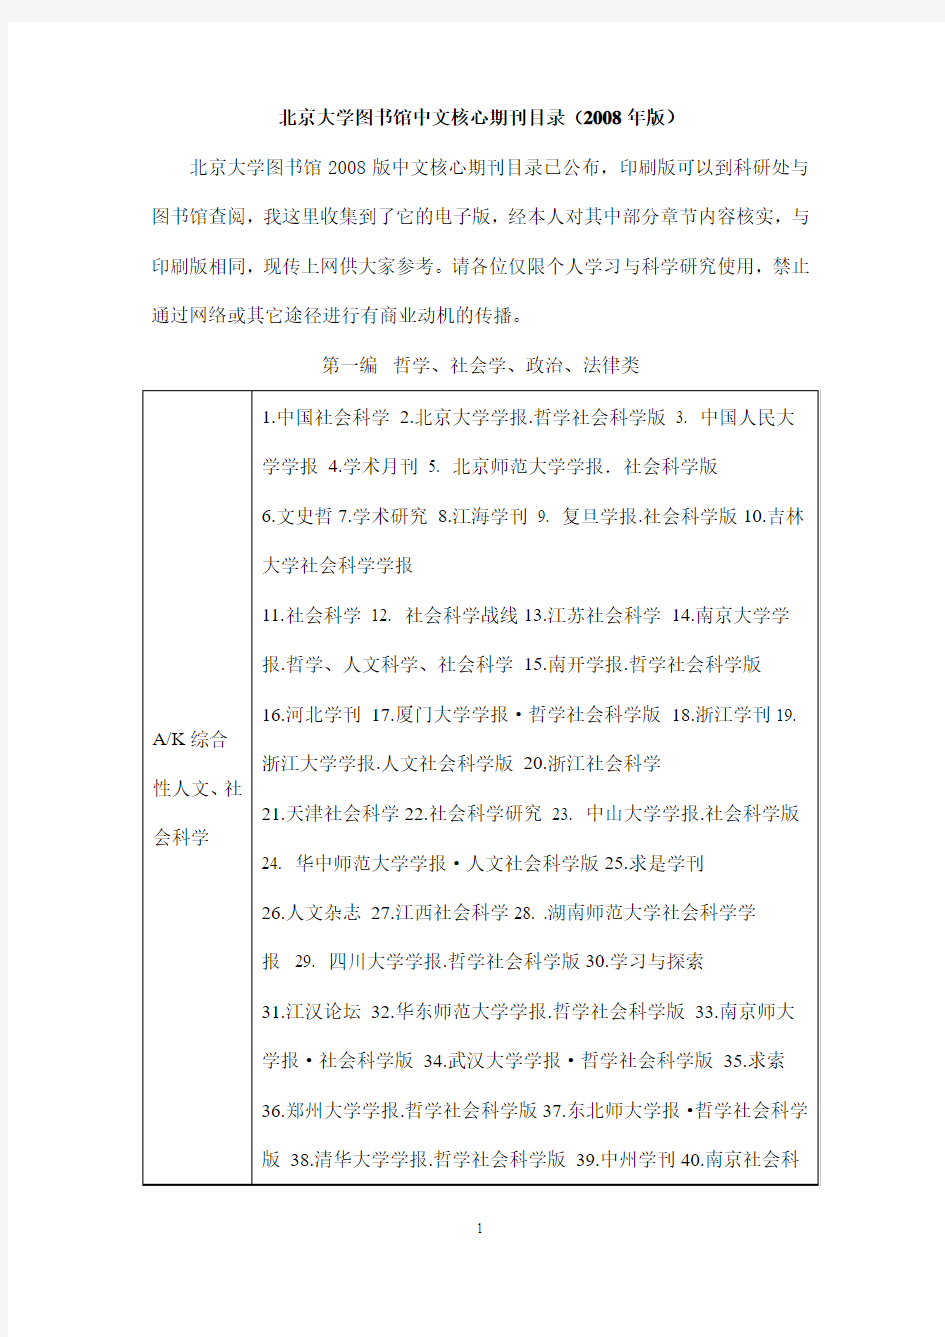 北京大学图书馆中文核心期刊目录(2008年版)